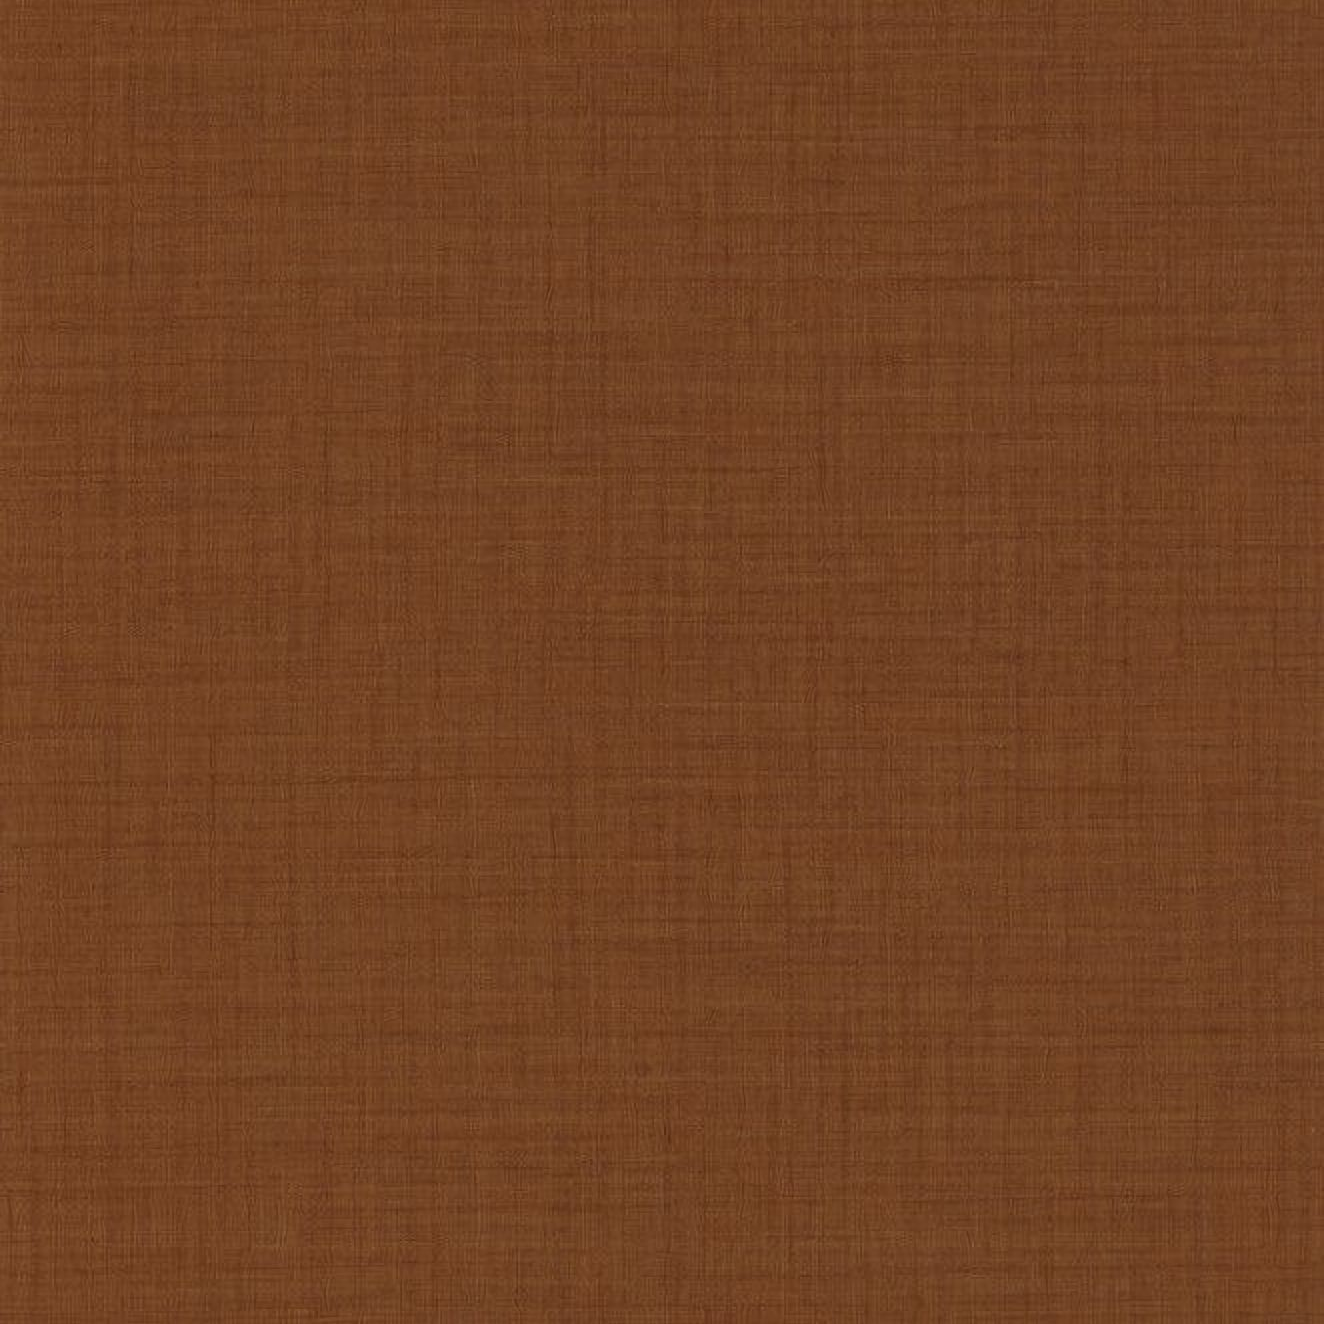 Обои 85478465 Tweed Casadeco - французские, виниловые, коричневого тона, под рогожку, длина 10.05м, ширина 0.53м, рекомендуем в гостиную.